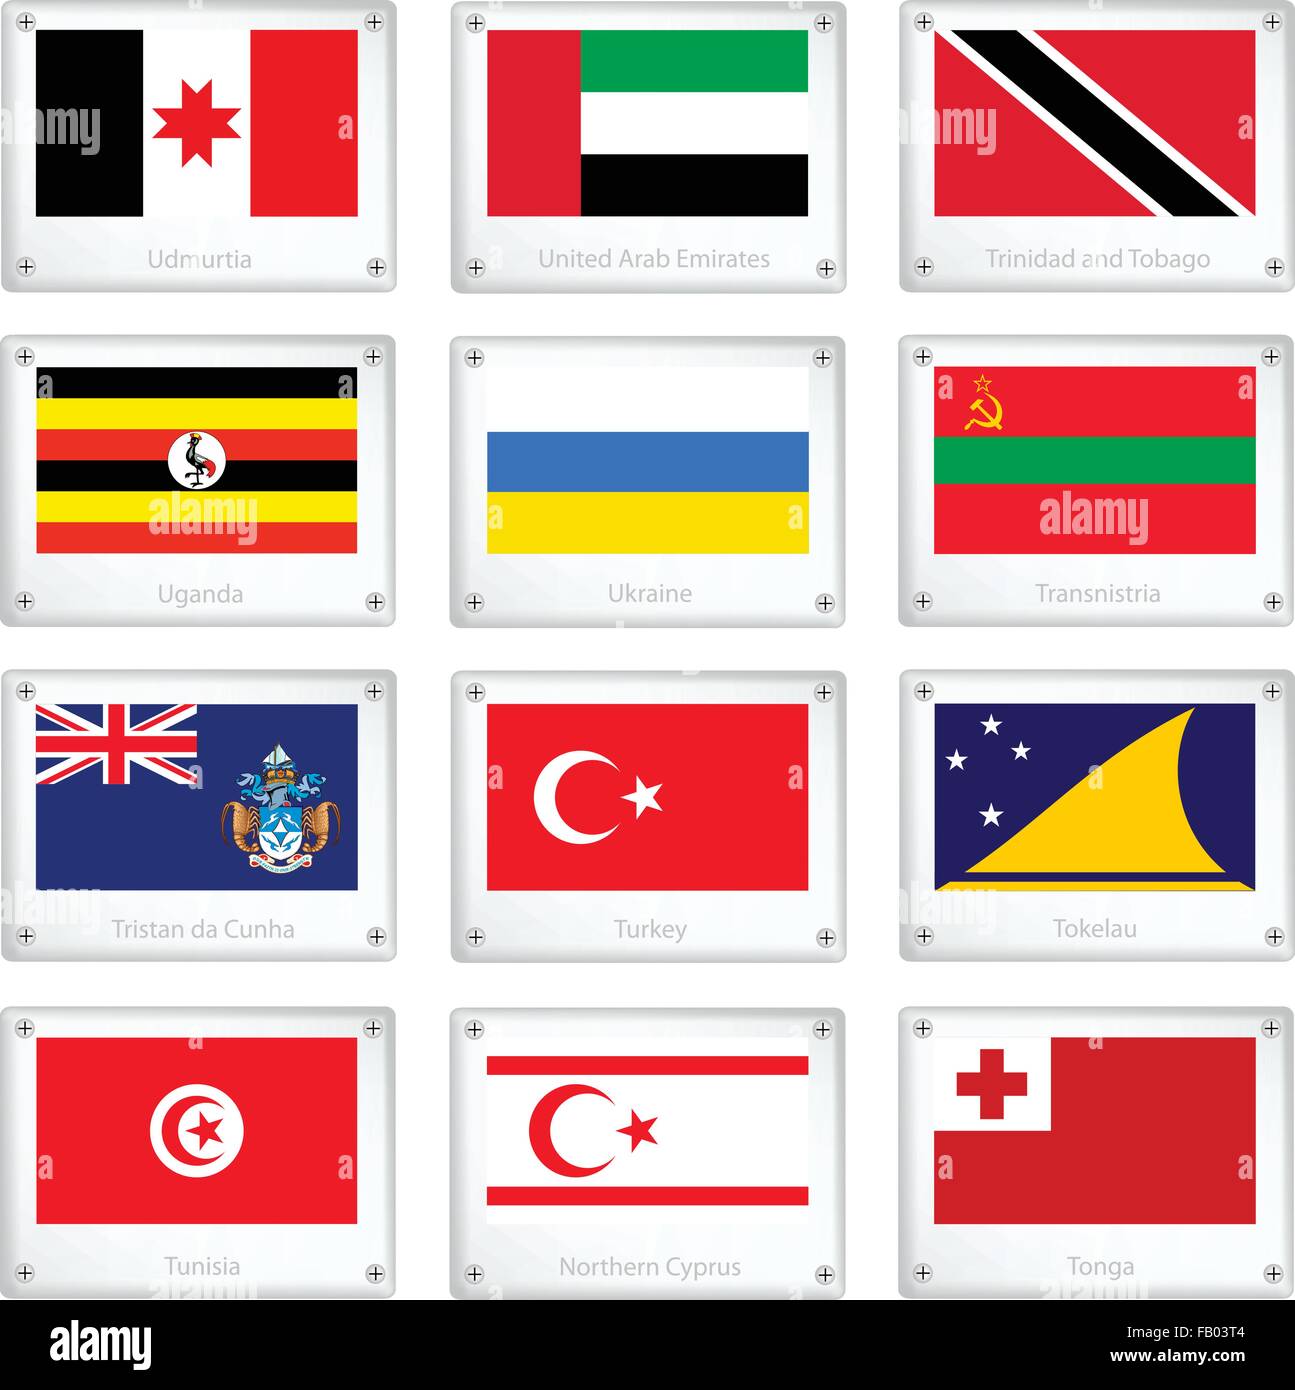 Flags of Udmurtia, United Arab Emirates, Trinidad and Tobago, Uganda, Ukraine, Transnistria, Tristan, Turkey, Tokelau, Tunisia, Stock Vector